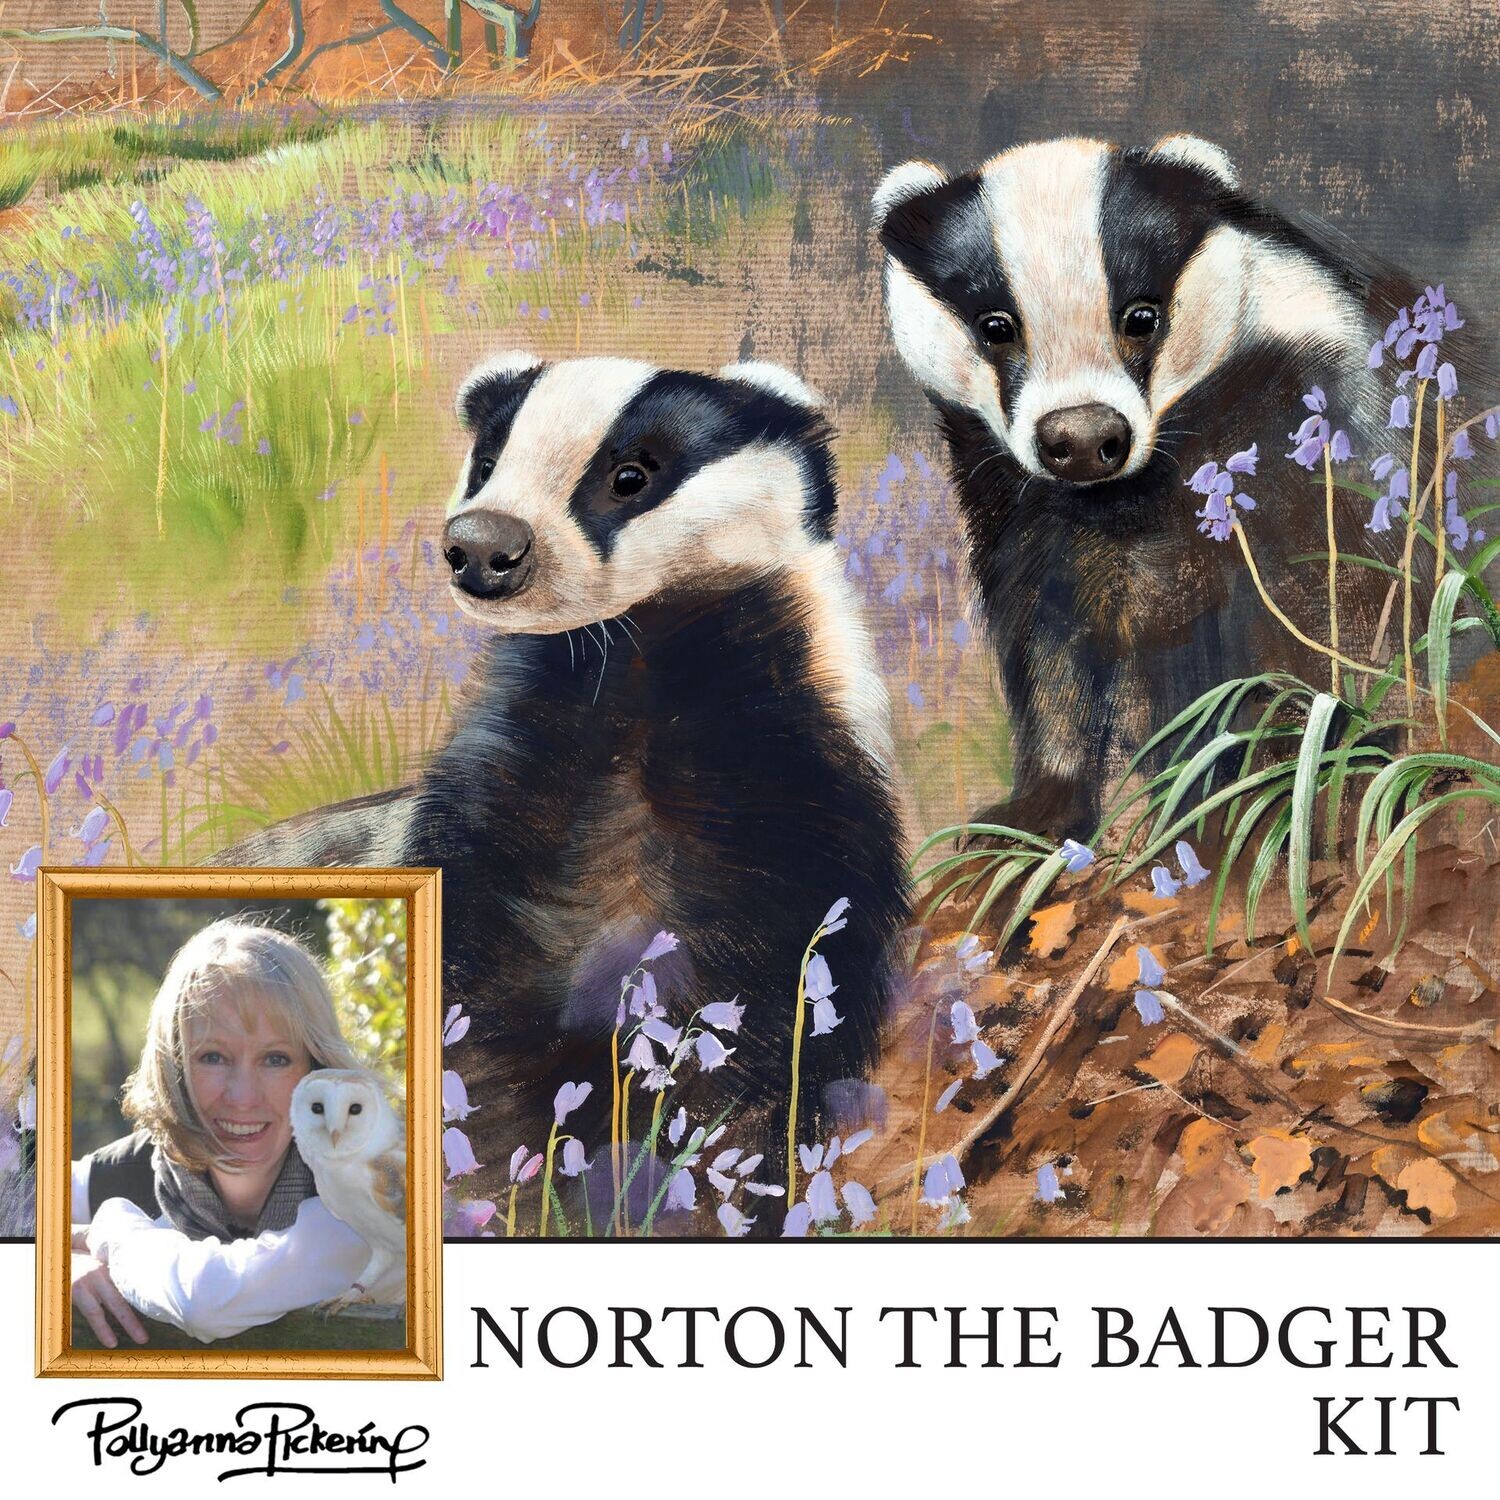 Pollyanna Pickering's Norton the Badger Digital Kit